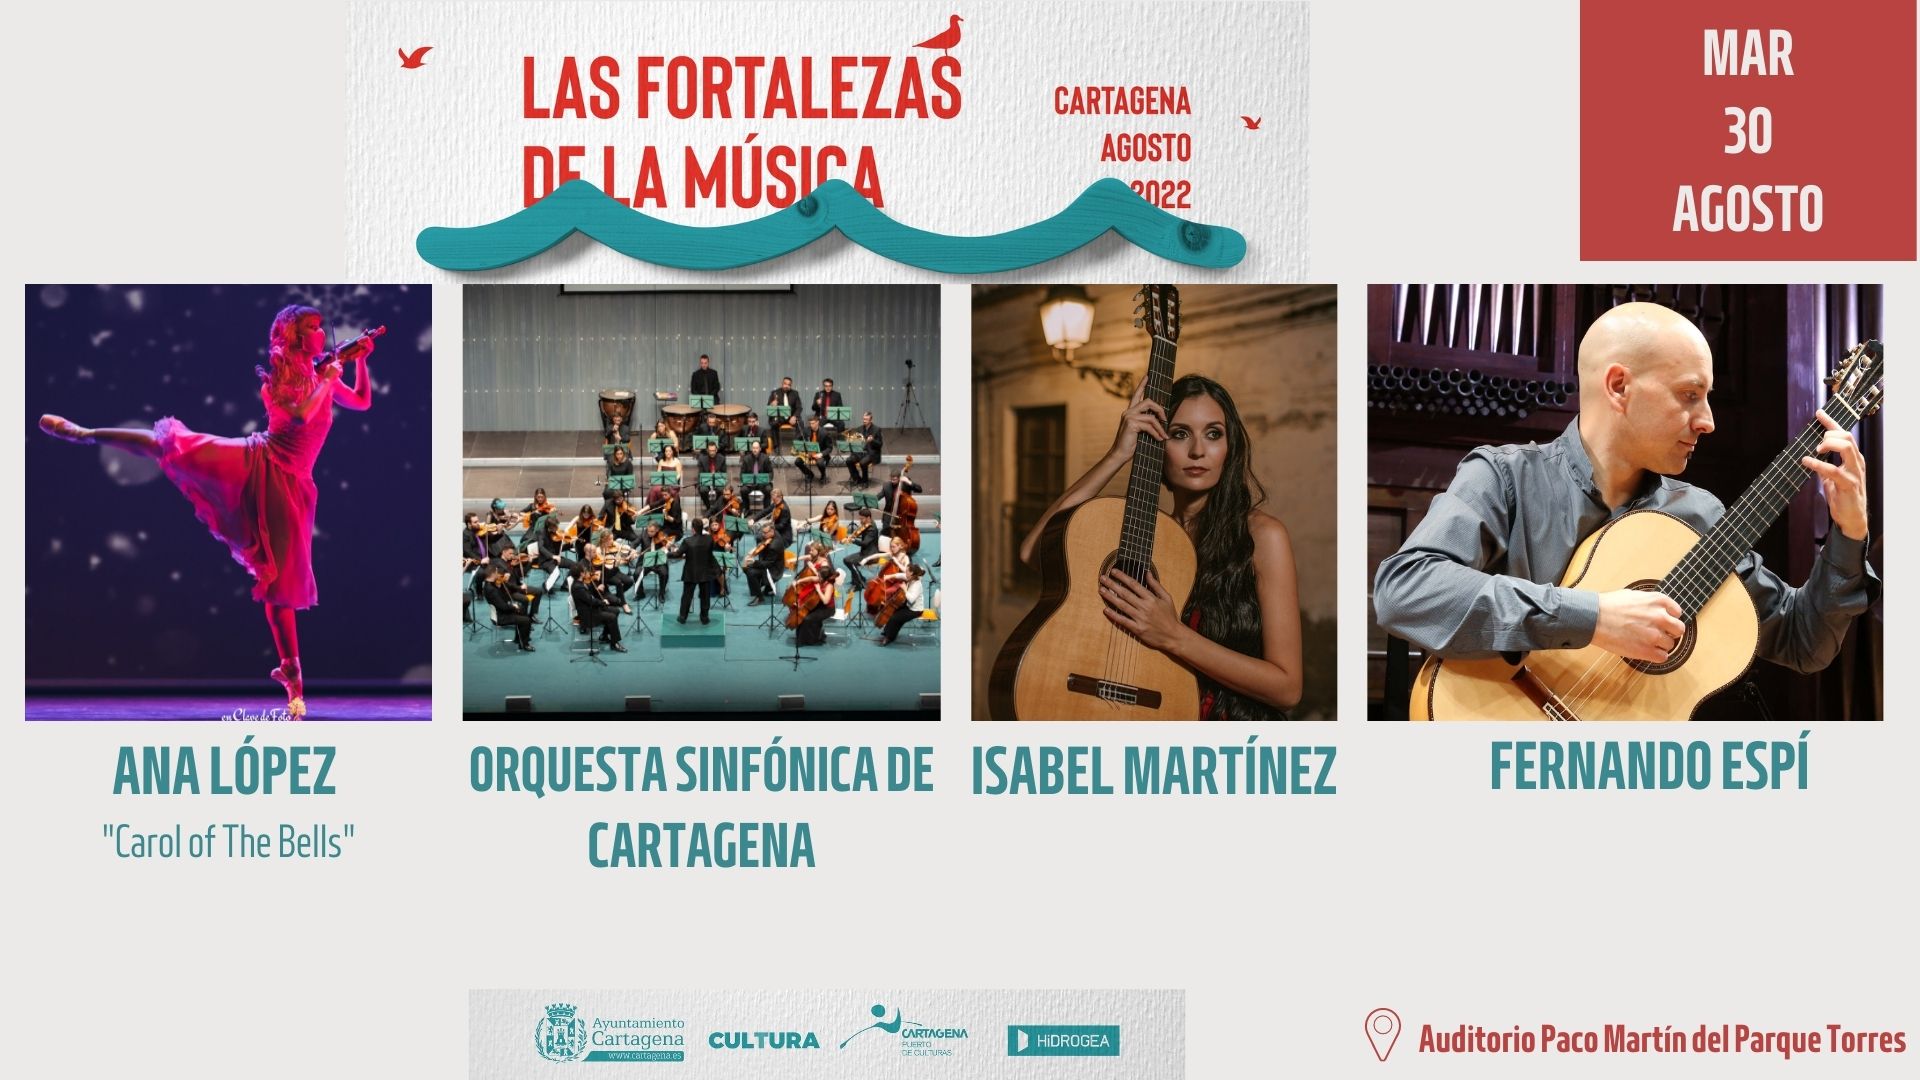 LAS FORTALEZAS DE LA MUSICA: AUDITORIO PACO MARTIN DEL PARQUE TORRES